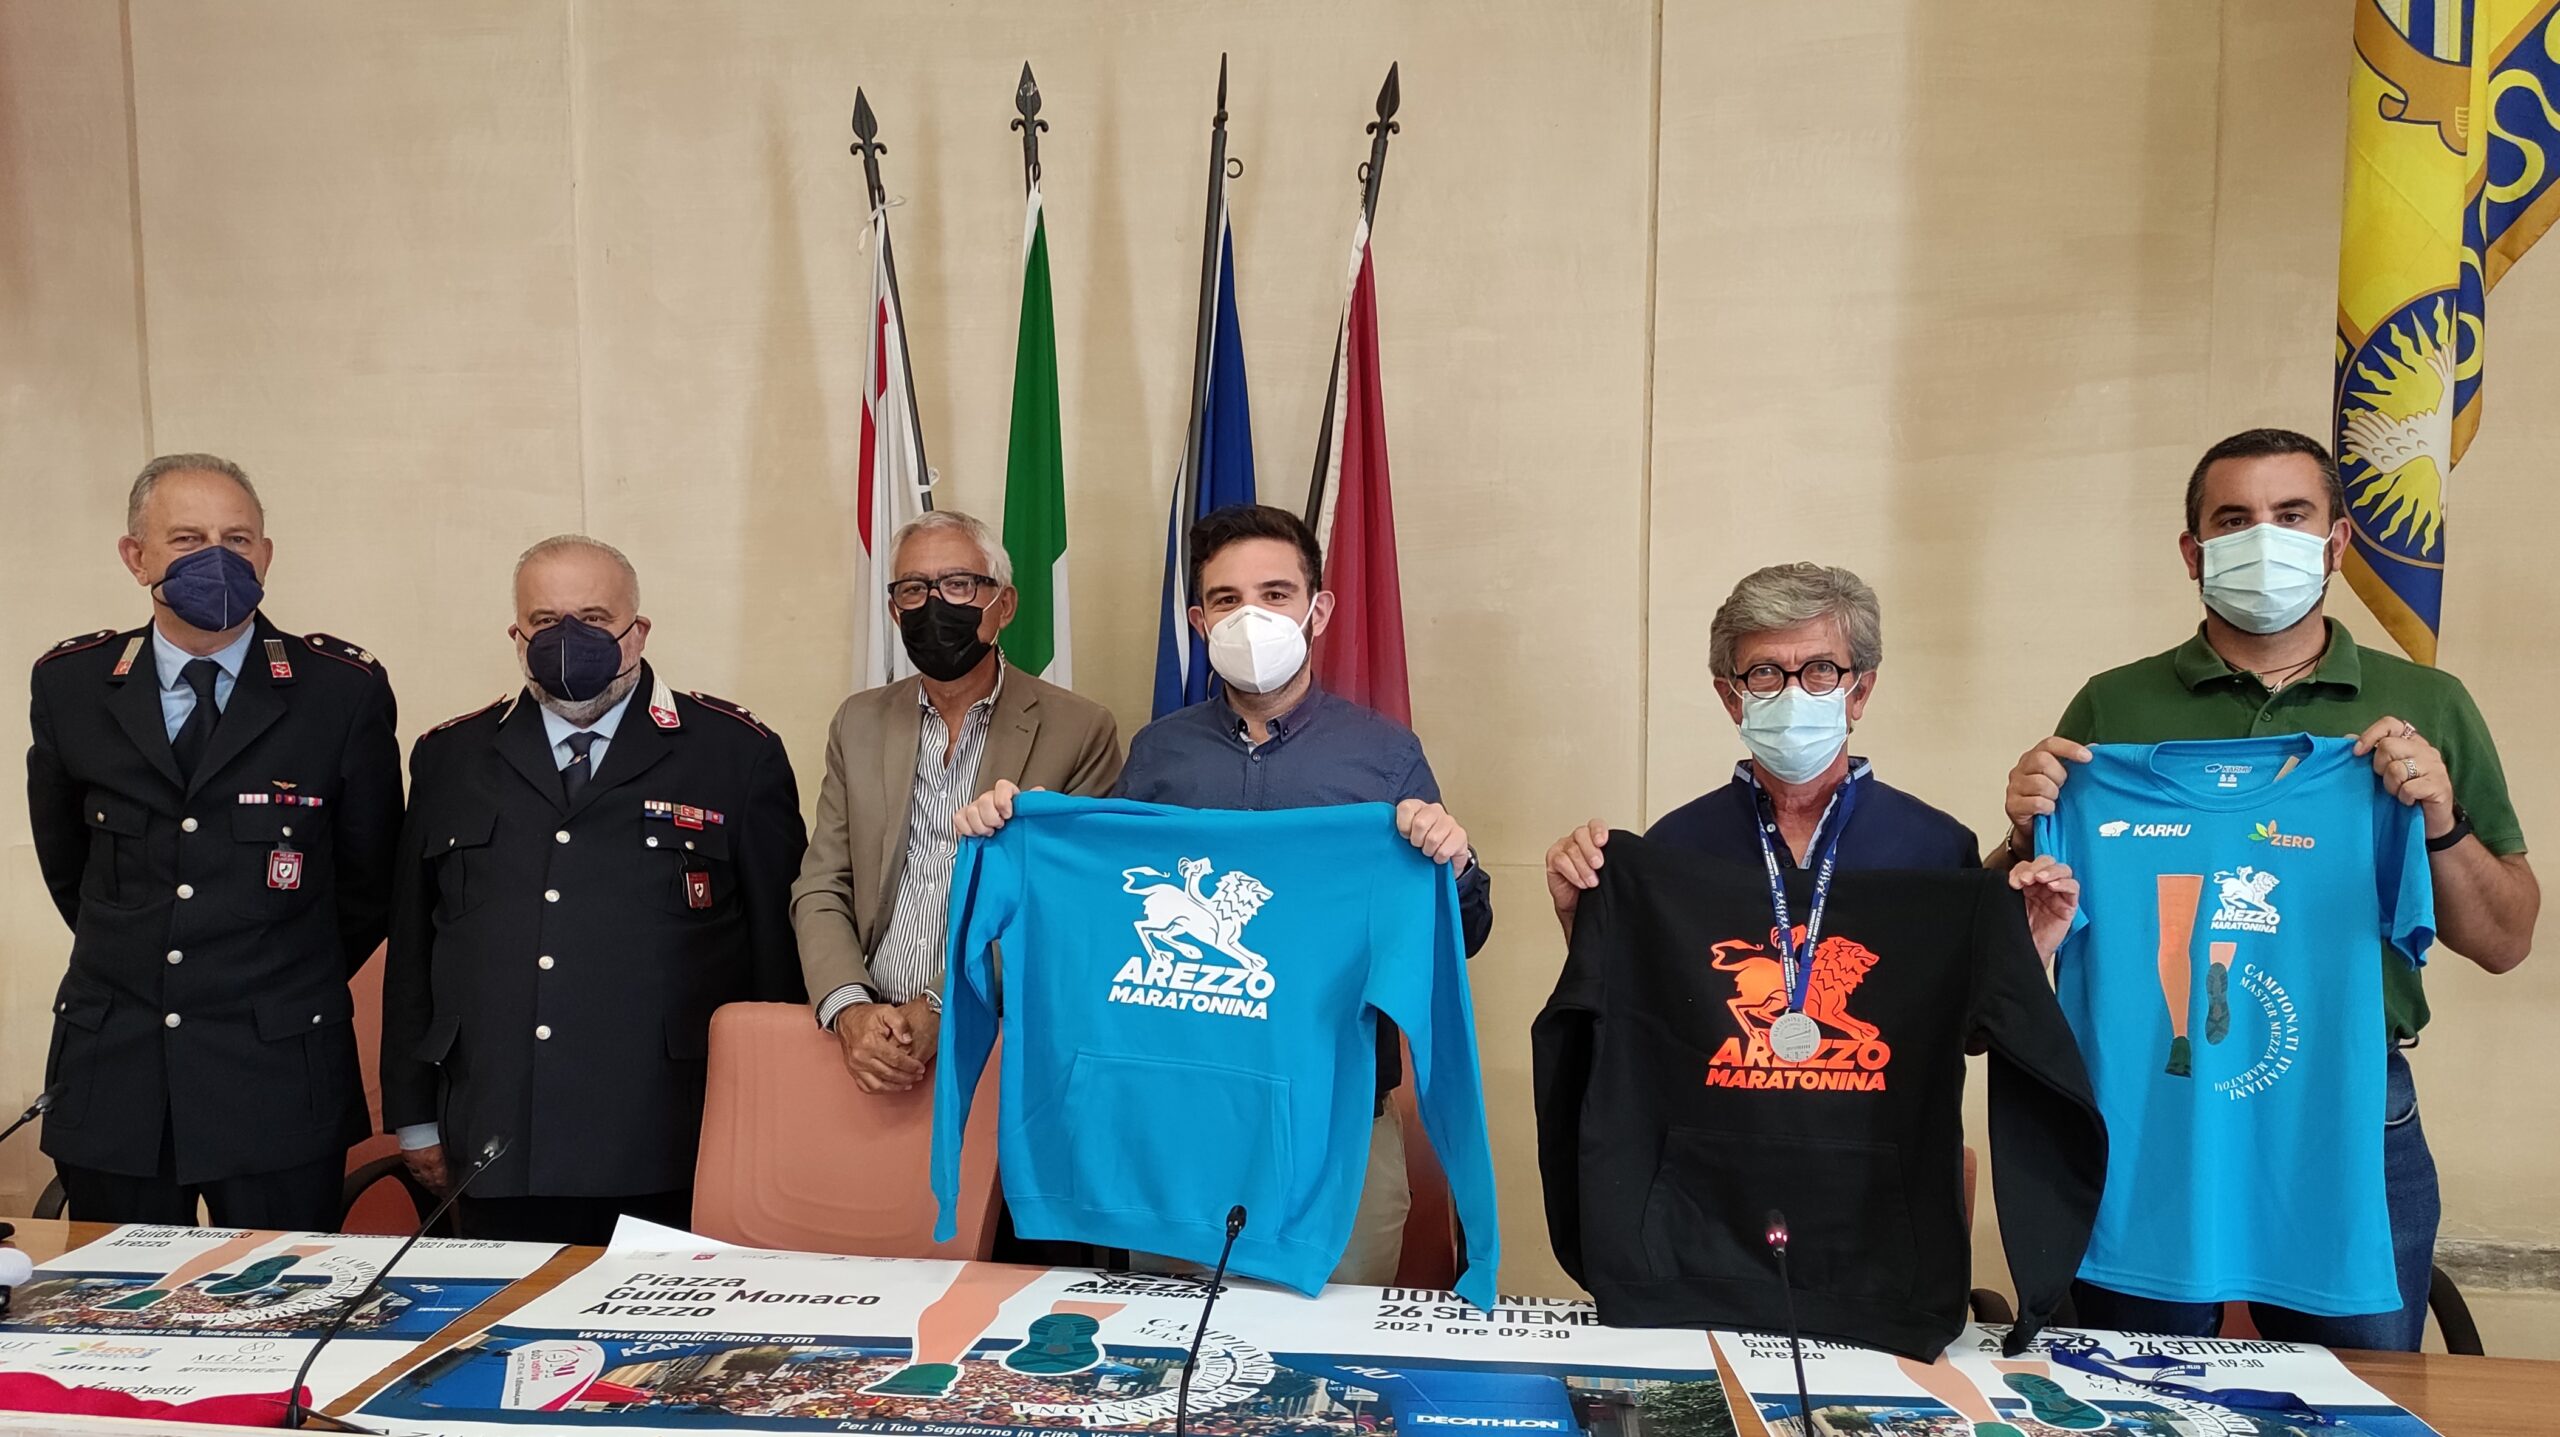 Torna la Maratonina città di Arezzo: l’evento sarà organizzato in piena sicurezza